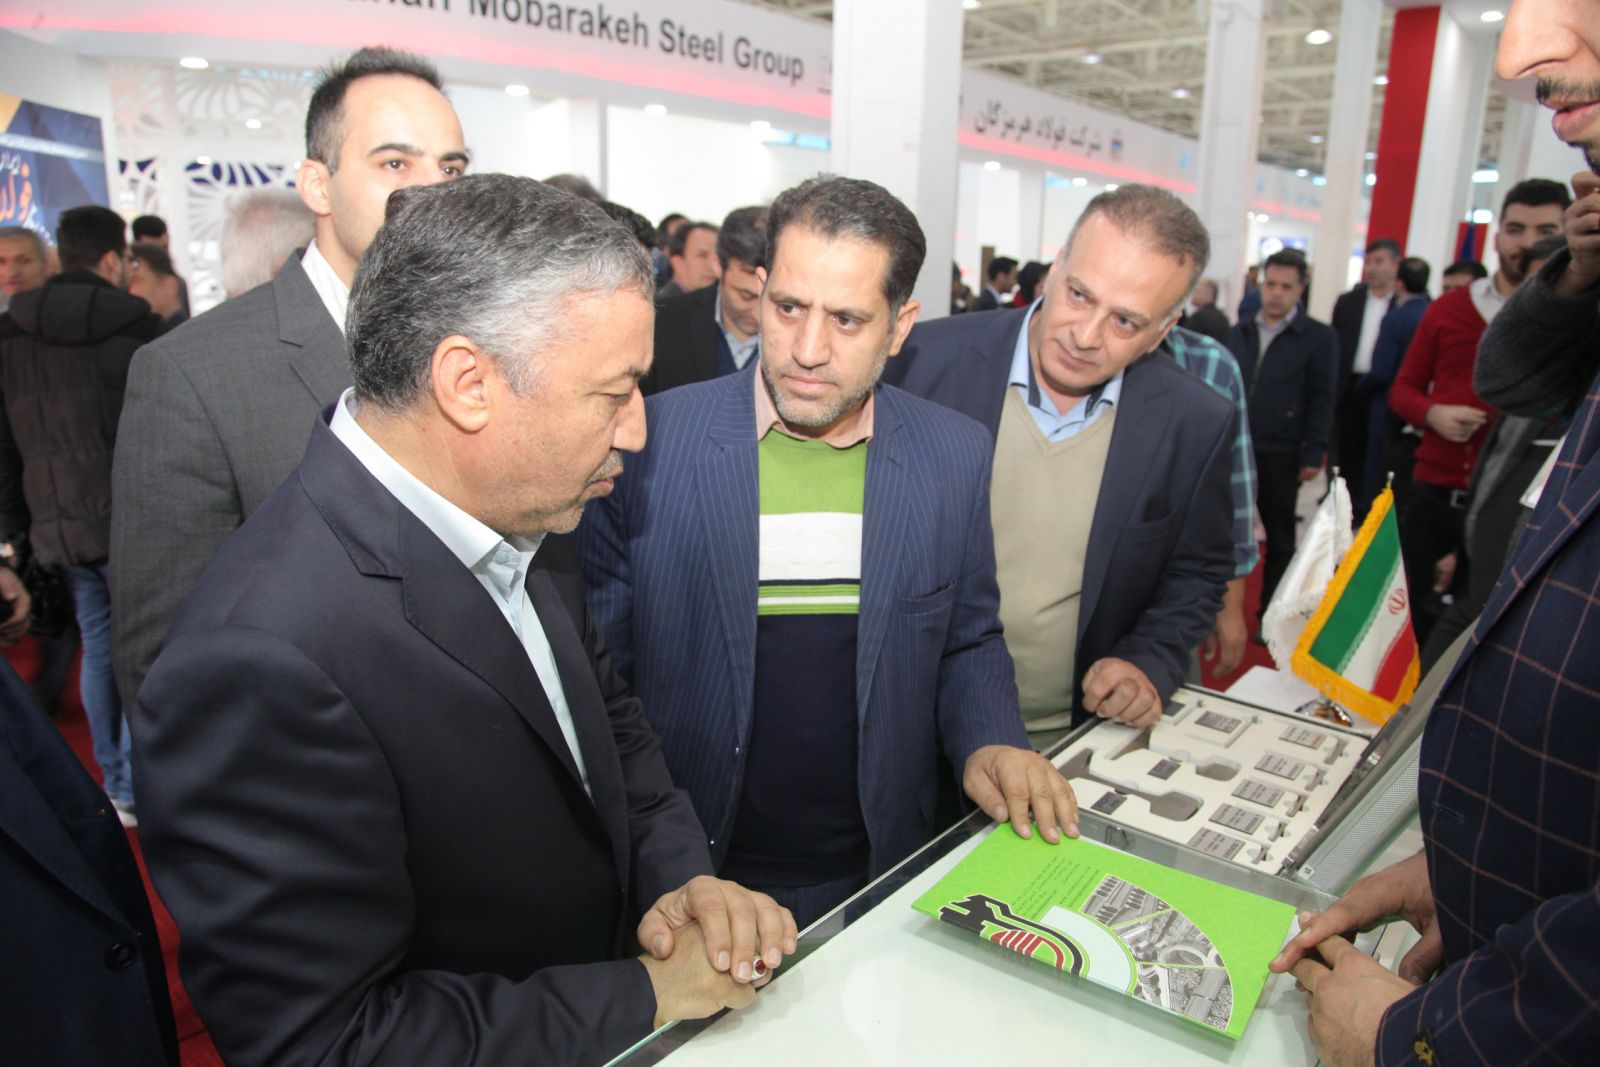 ذوب آهن اصفهان با تولید محصولات استراتژیک می تواند در زمینه ارزآوری موفق باشد